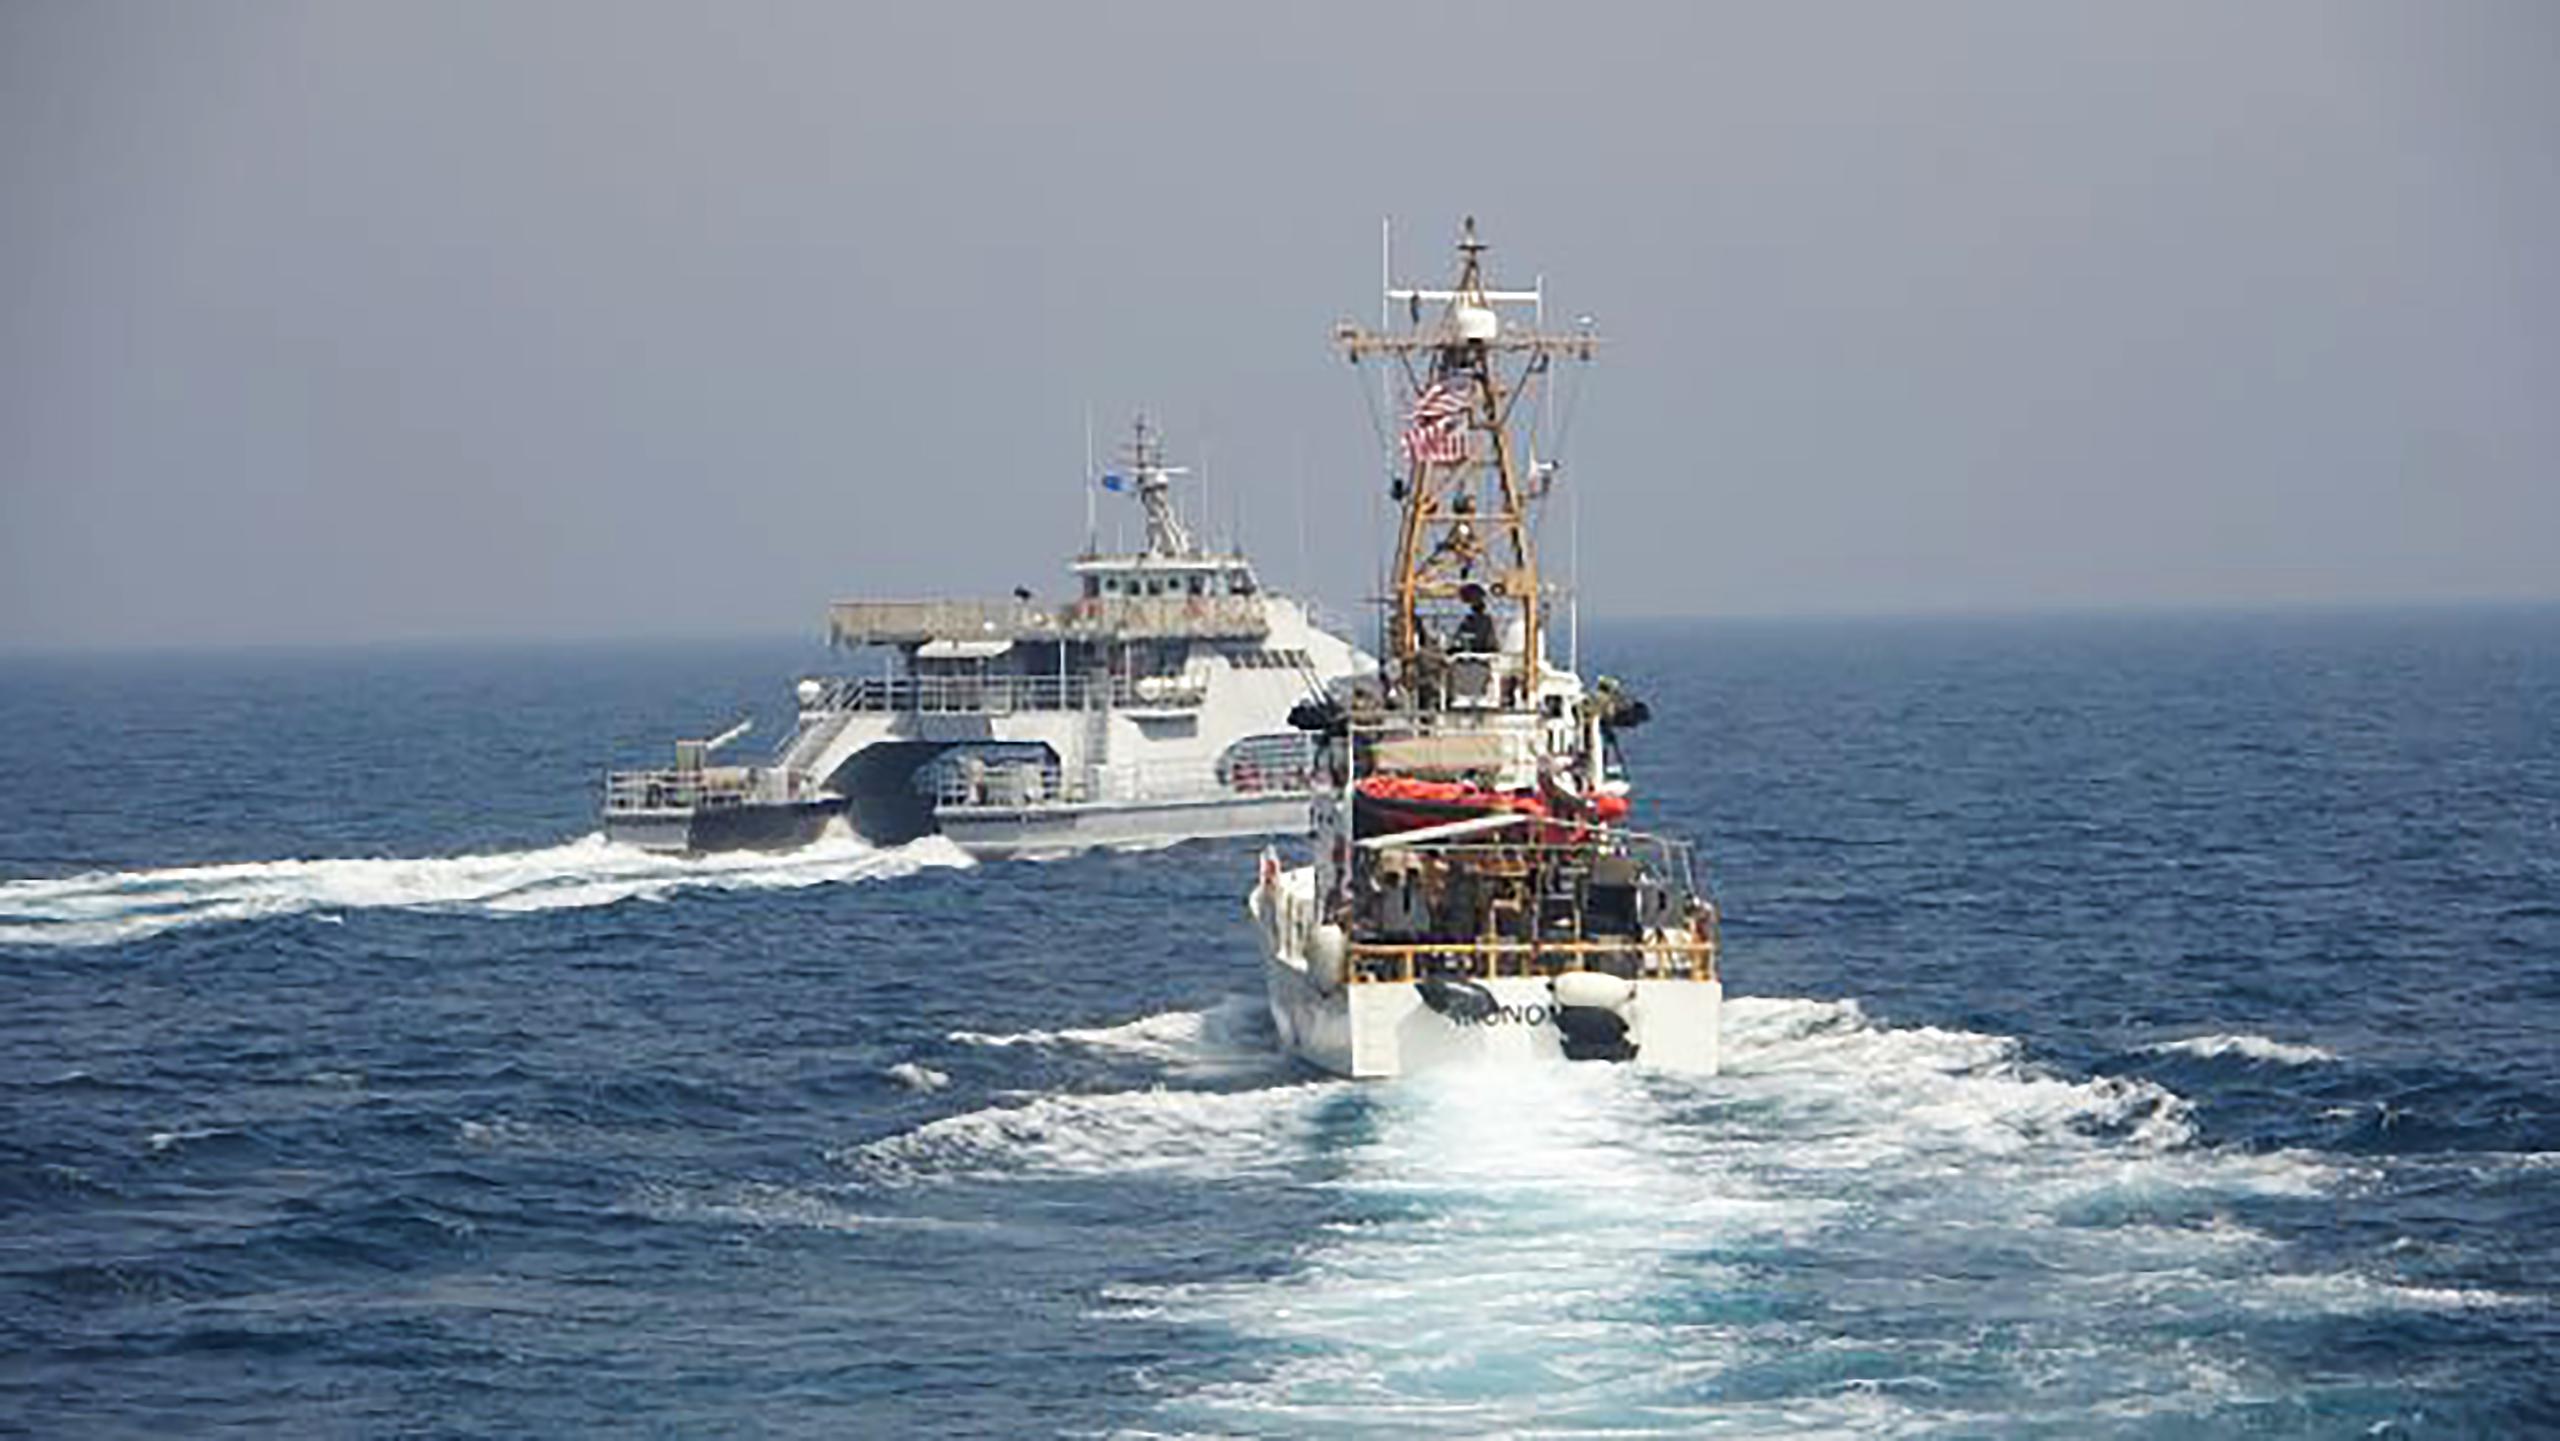 Imágenes del 2 de abril publicadas por la Marina mostraban un barco controlado por la Guardia Revolucionaria, un cuerpo paramilitar iraní, cruzándose en la trayectoria del USCGC Monomoy.